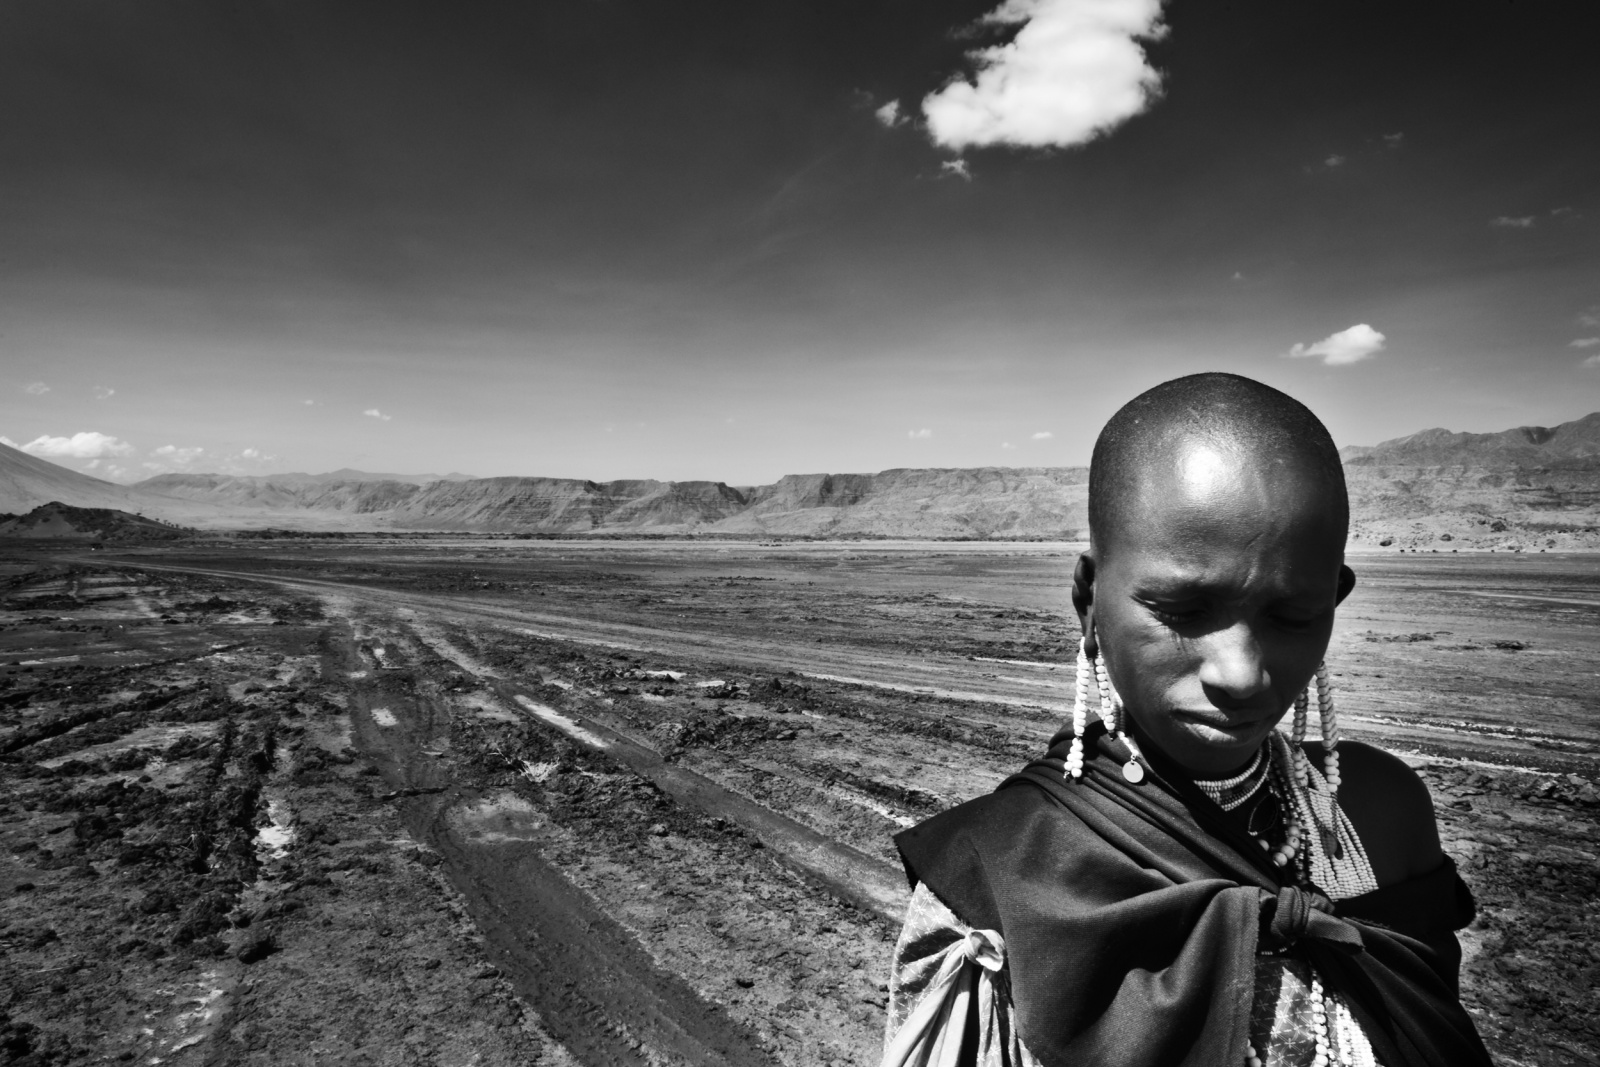 Serengeti/Ngorongoro